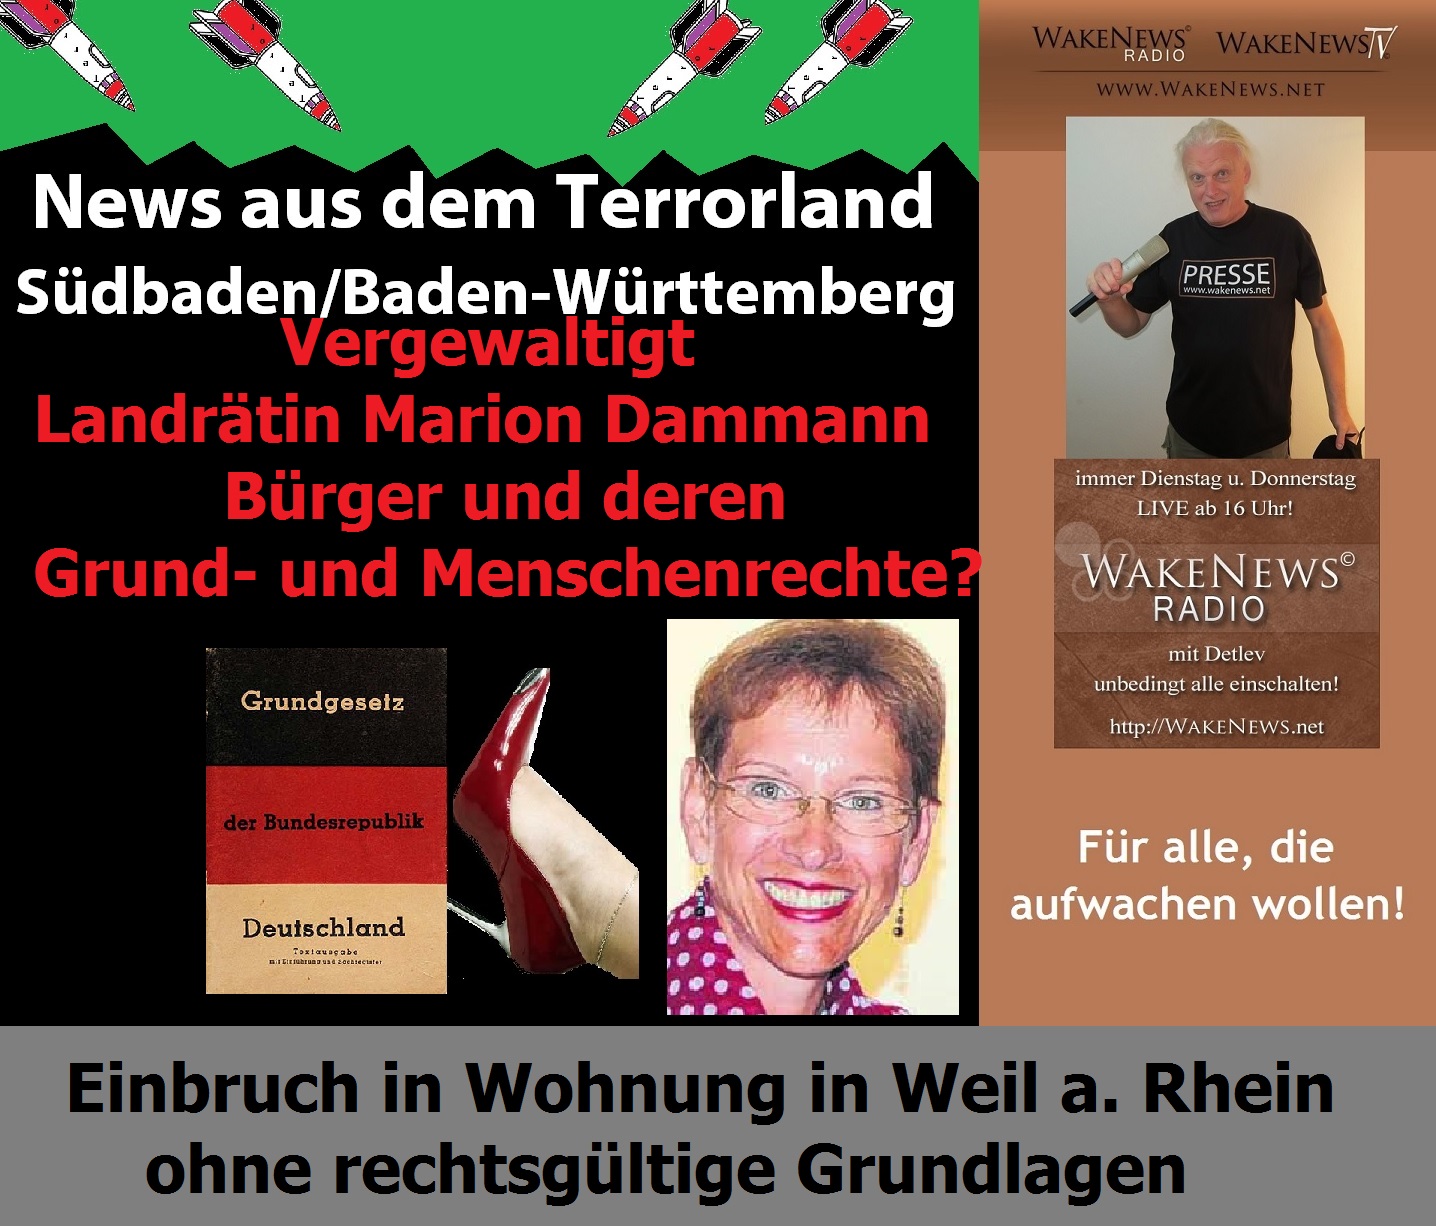 News aus dem Terrorland Sdbaden, Baden-Wrttemberg Landrtin Marion Dammann vergewaltigt Grundrechte